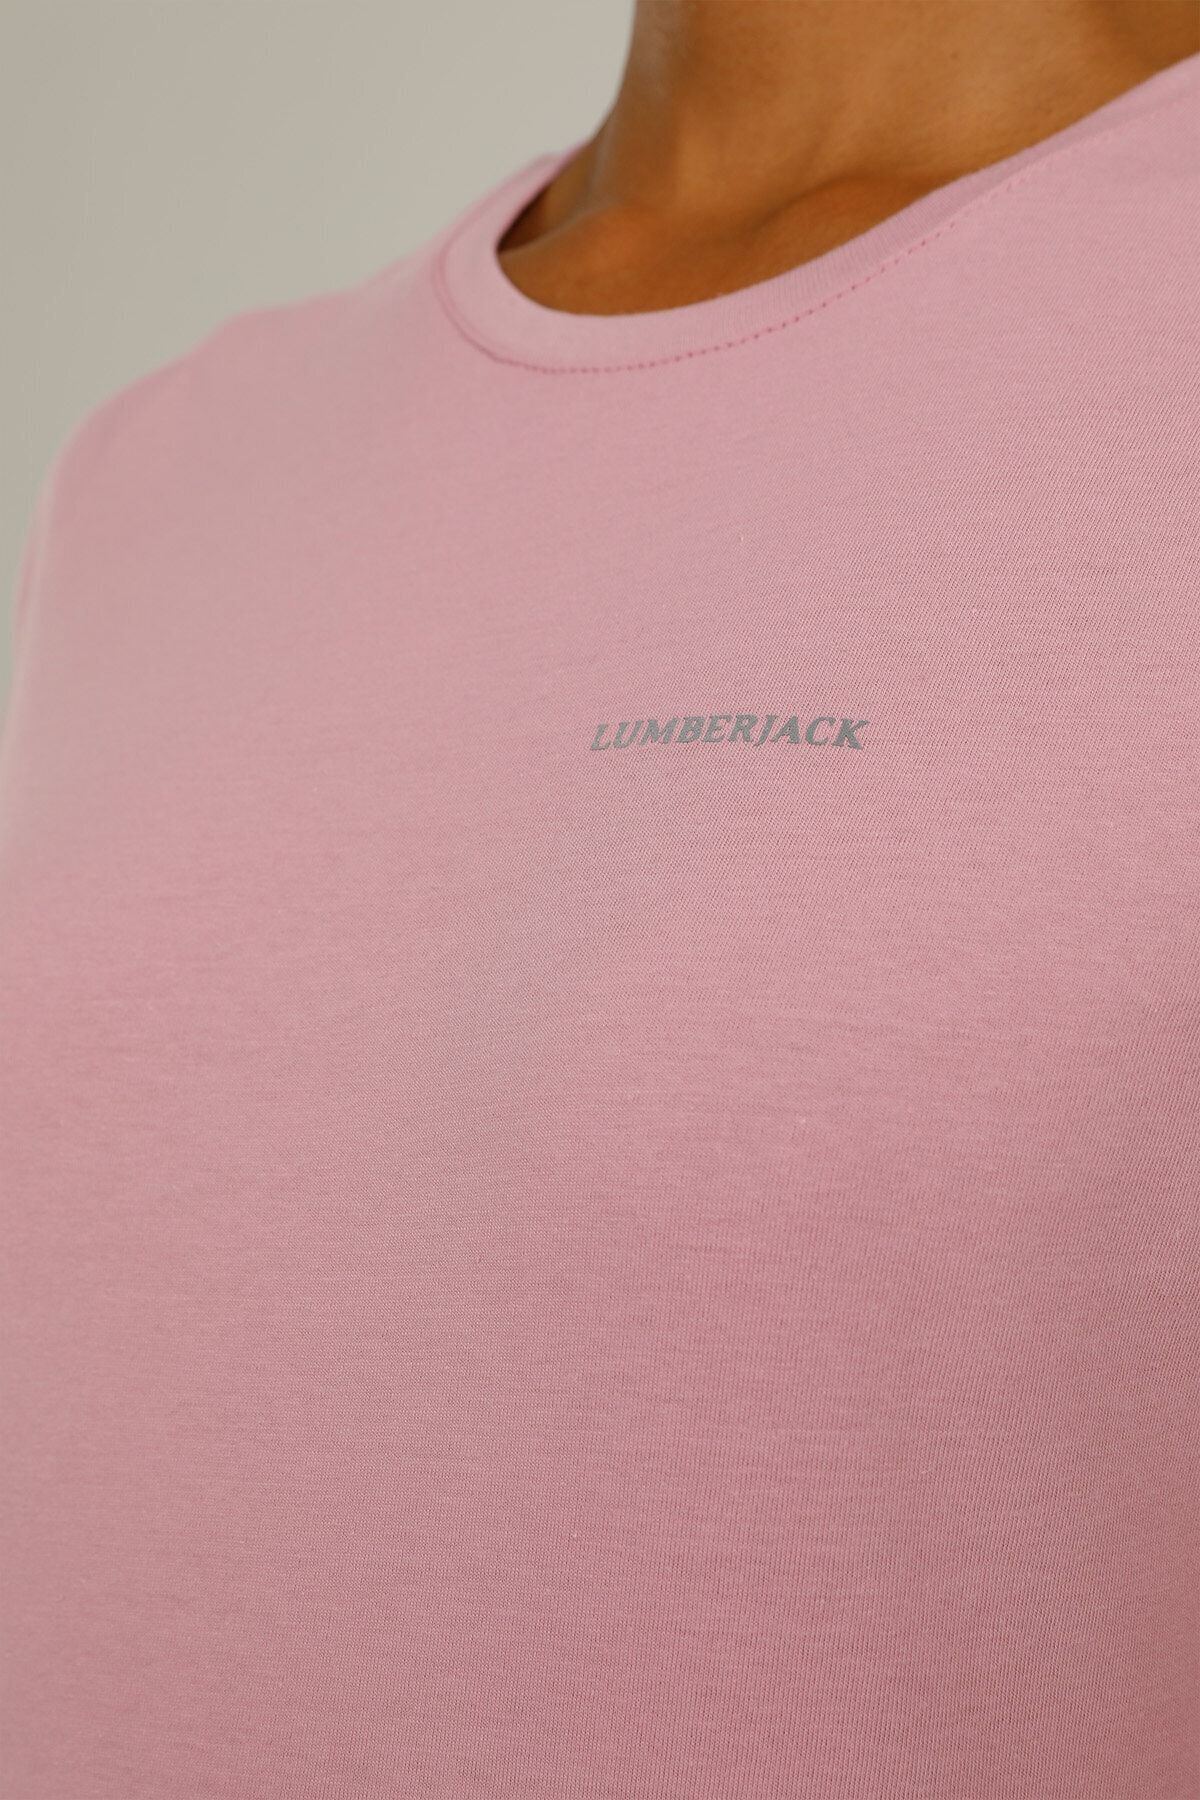 Lumberjack Ct122 Basıc C Neck T-shır Kadın Kısa Kol T-shirt